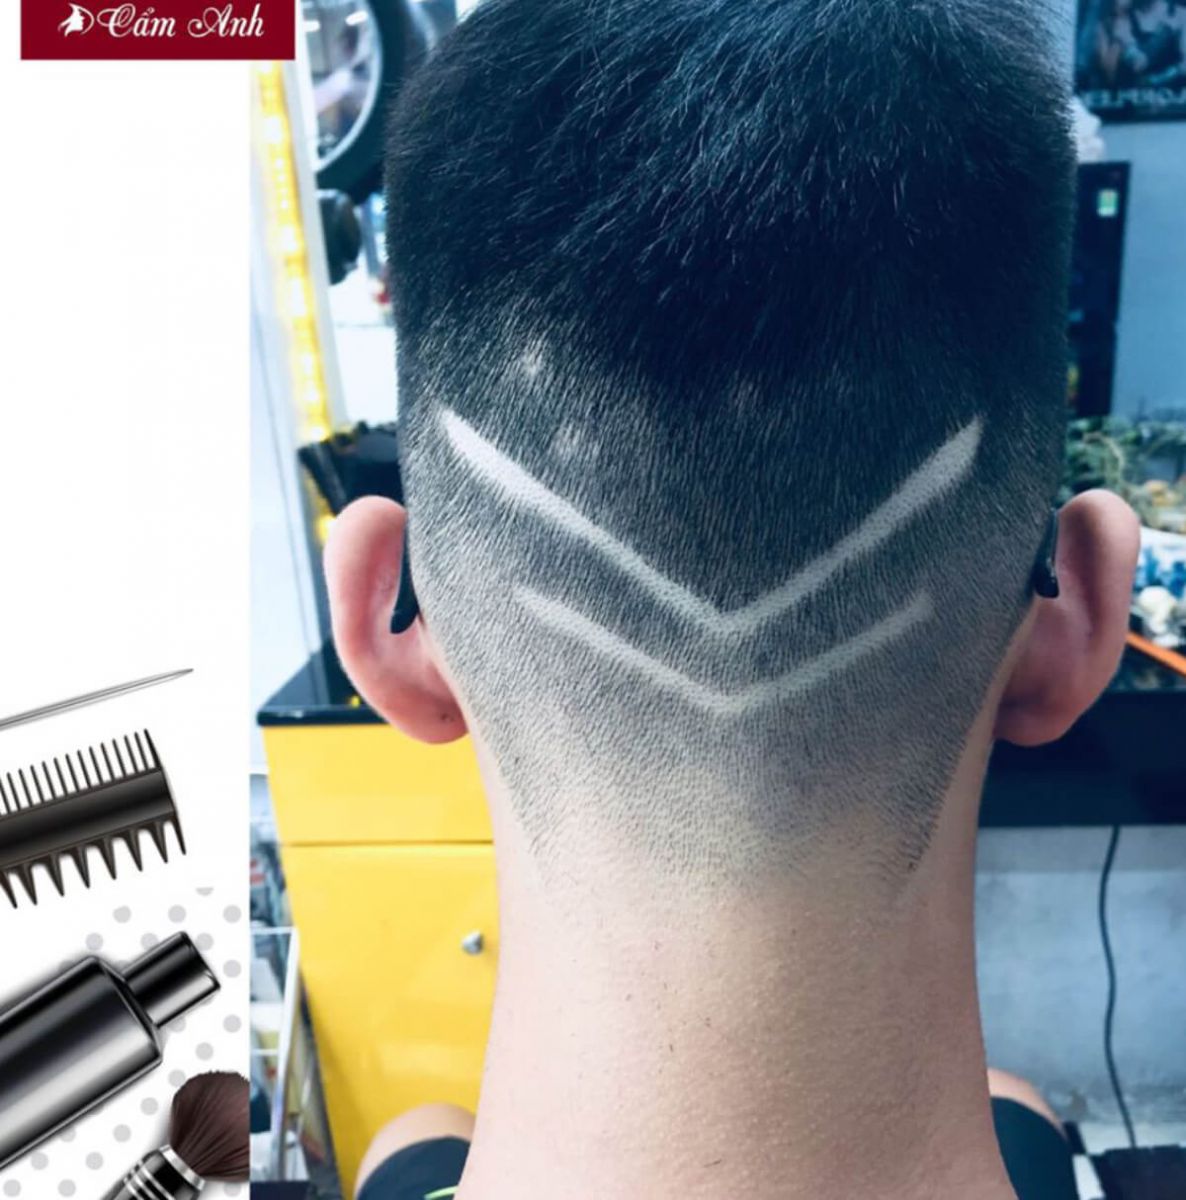 Quá trình cắt kiểu tóc Armani ngắn cho anh China  YouTube